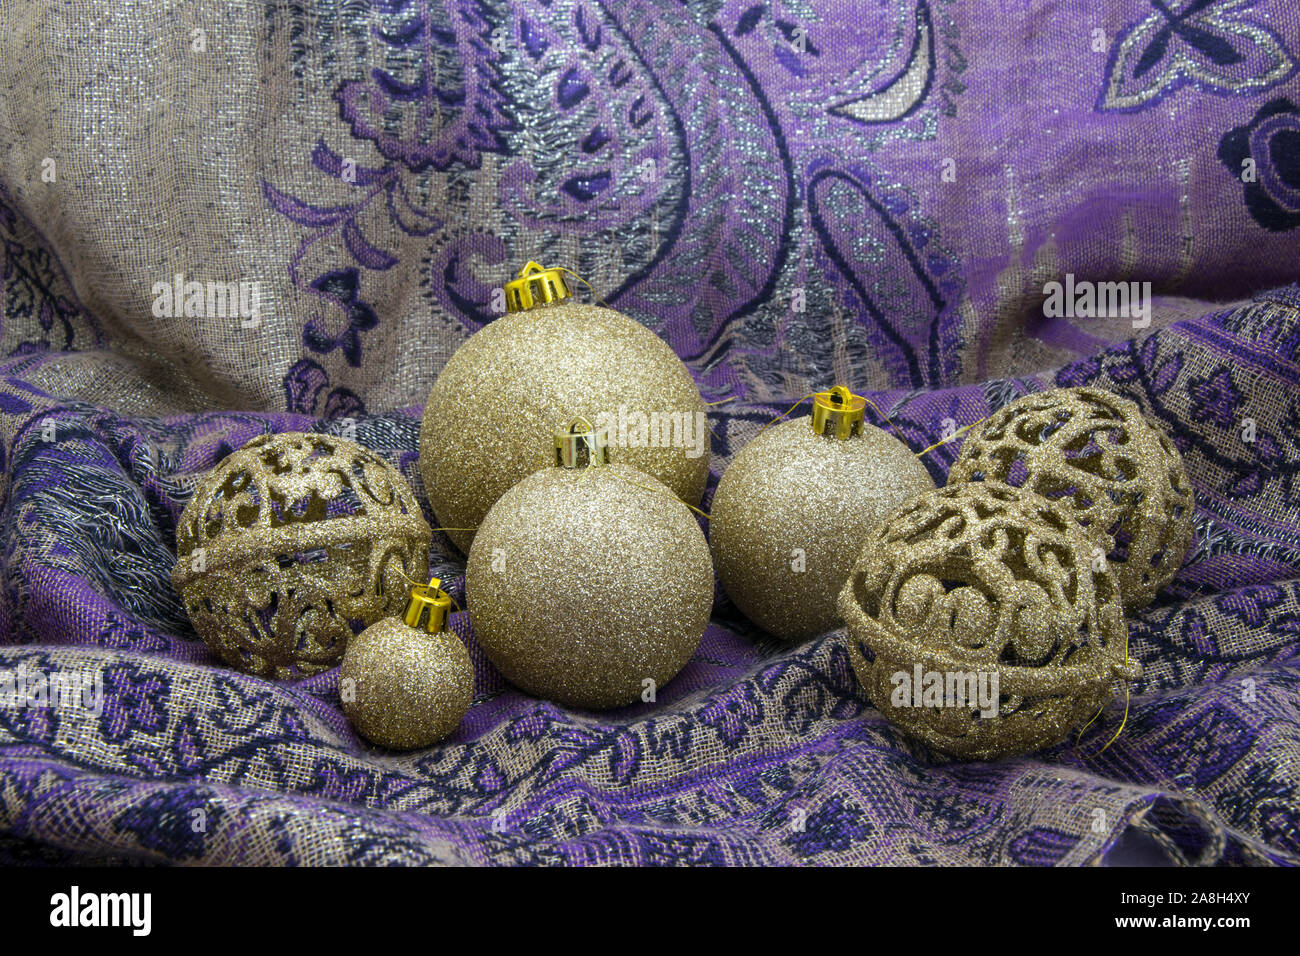 Golden baubles arrangement on purple textile. Stock Photo